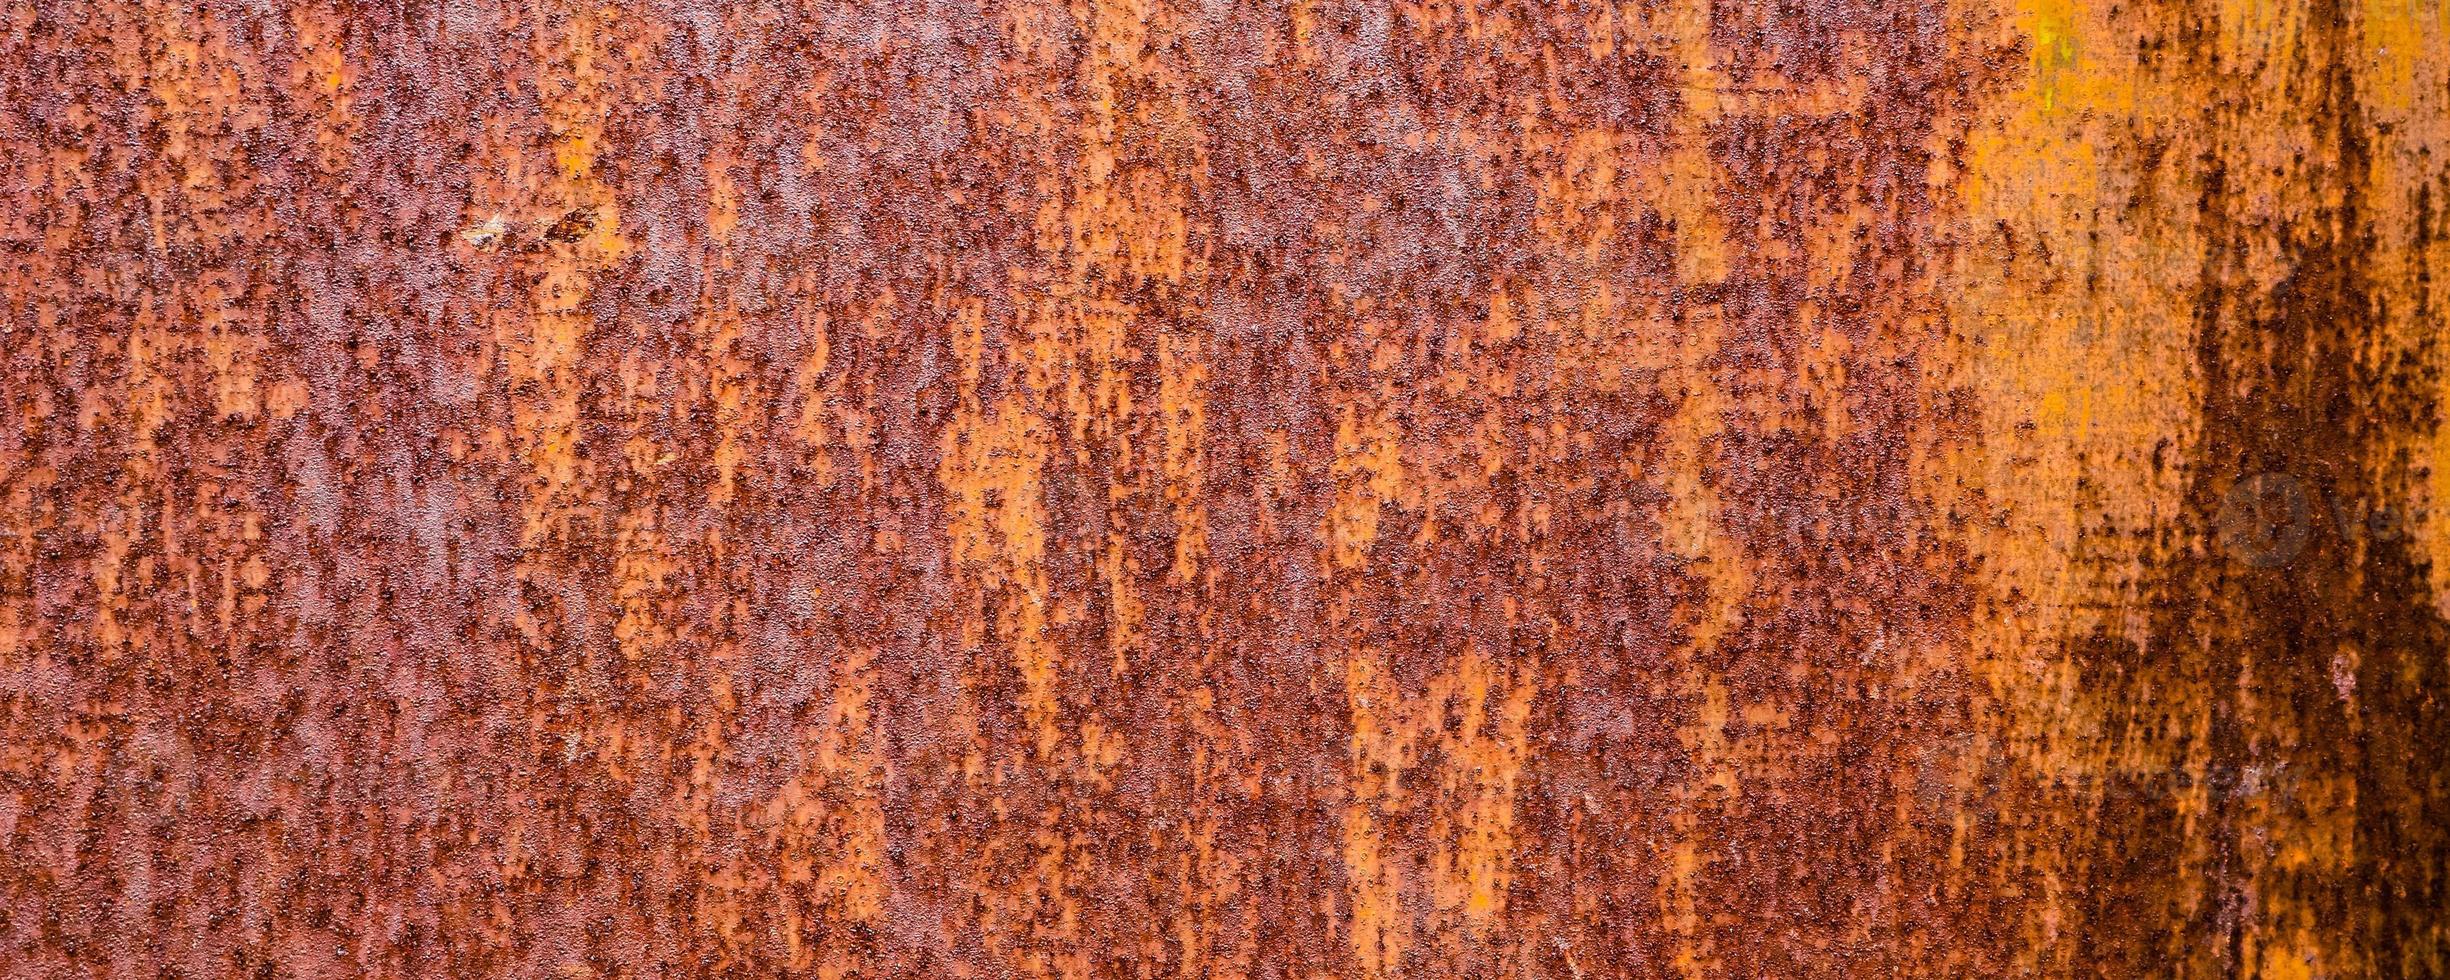 Abstract Grunge rostiges Metall Eisen Textur Muster Hintergrund. langer Website-Header oder Banner-Format. foto